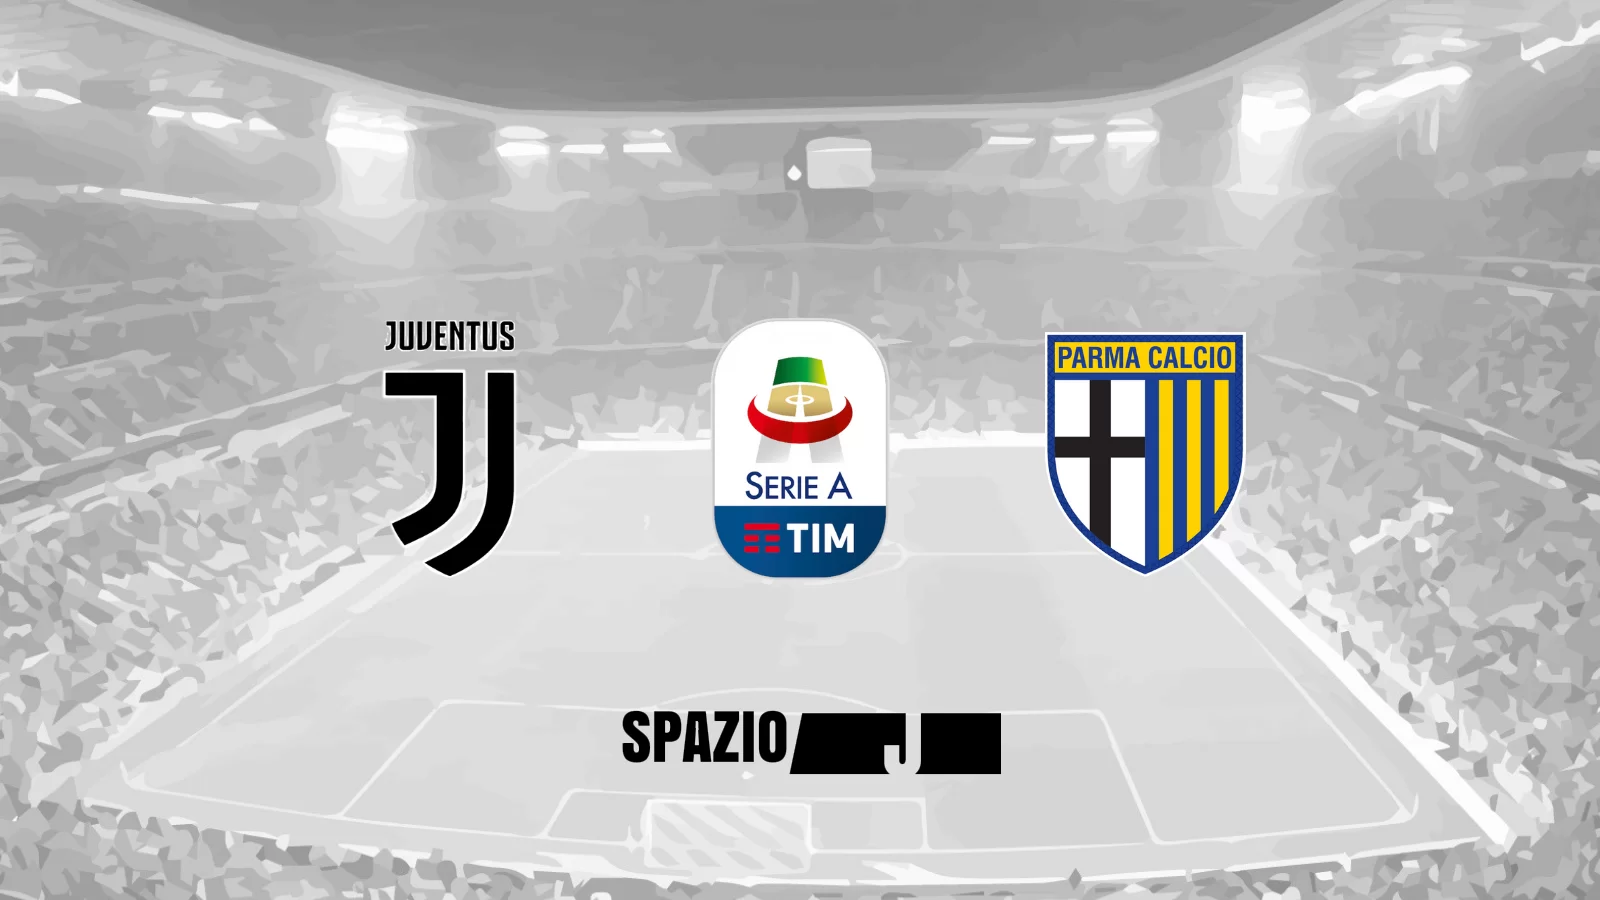 Verso Juventus-Parma: sabato tornano in campo i bianconeri, ecco le probabili formazioni